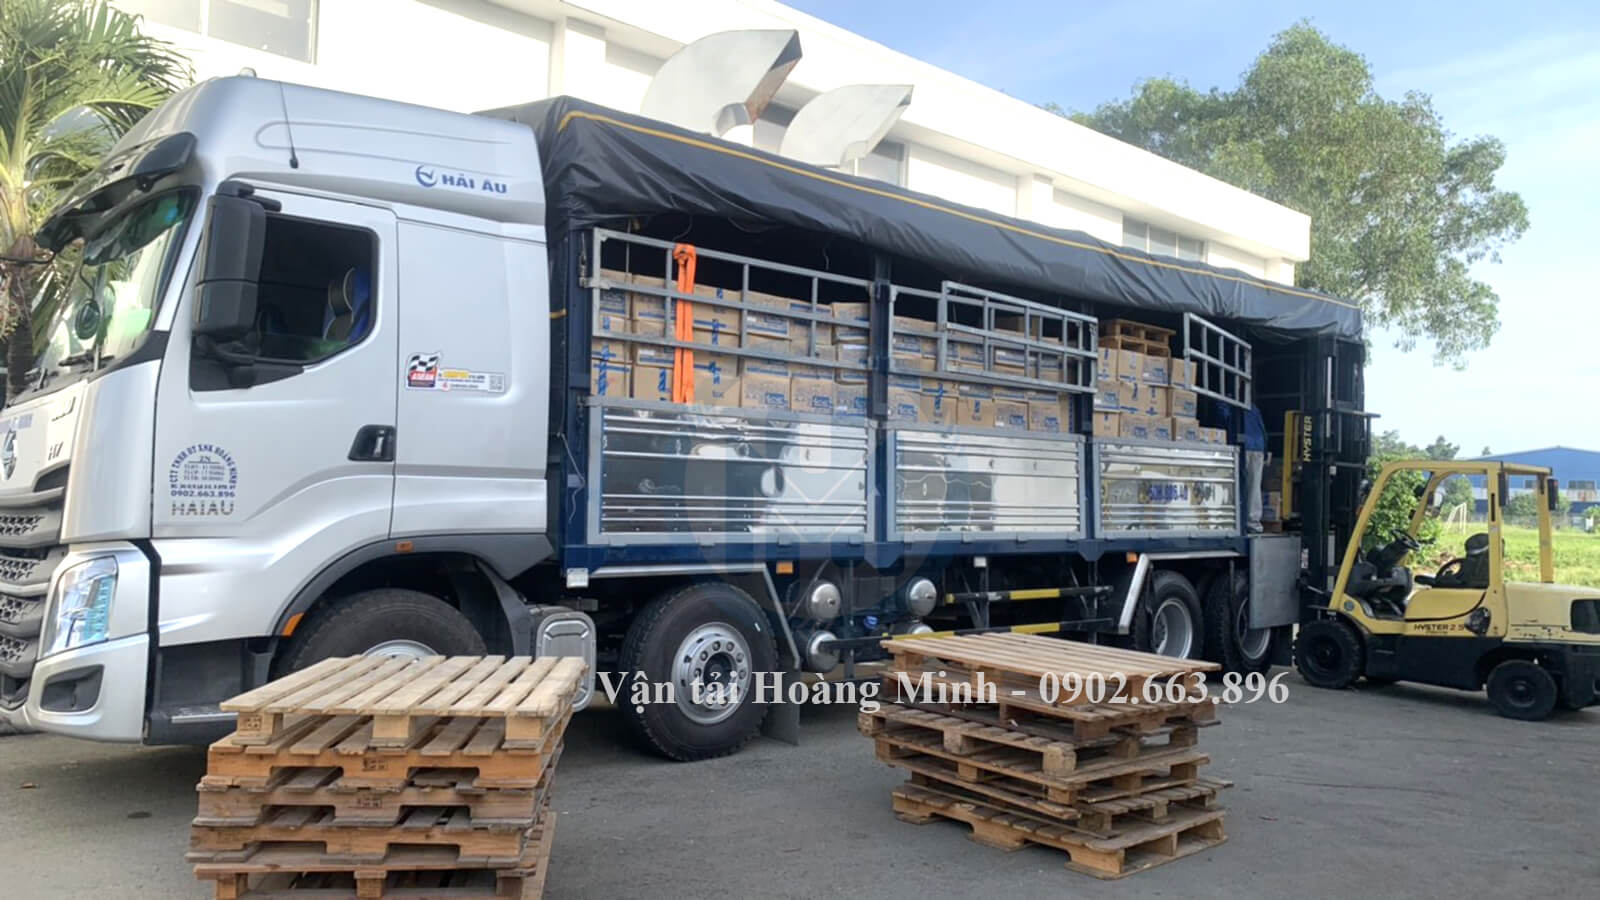 Xe tải Hoàng Minh nhận vận chuyển hàng sơn, bột trét cho khách đi KCN Sông Hậu tại tỉnh Đồng Tháp.jpg